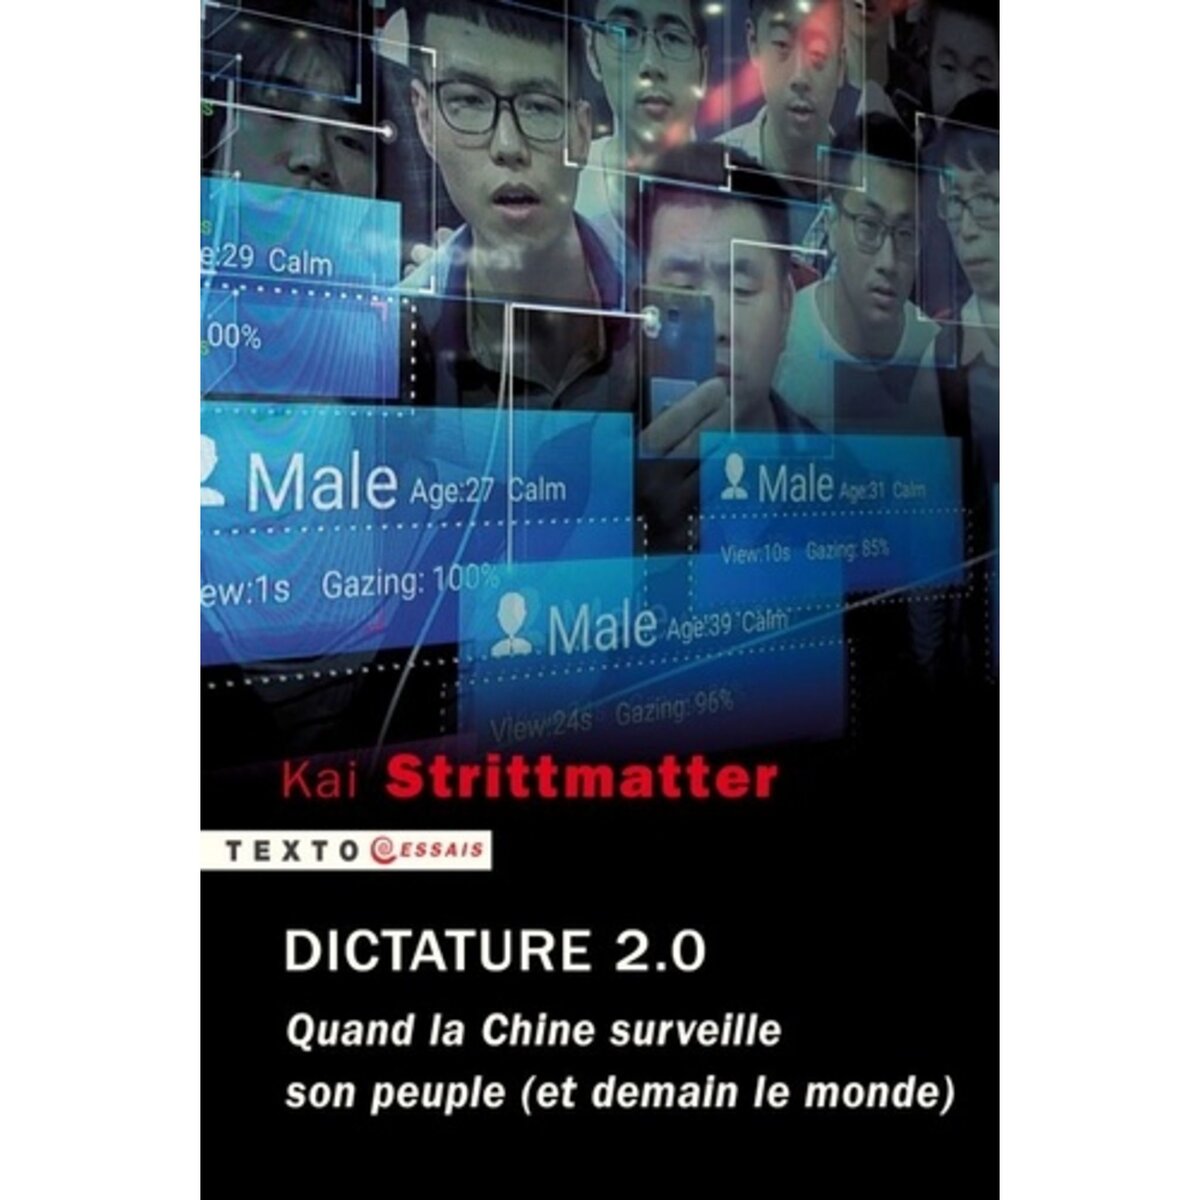  DICTATURE 2.0. QUAND LA CHINE SURVEILLE SON PEUPLE (ET DEMAIN LE MONDE), EDITION ACTUALISEE, Strittmatter Kai